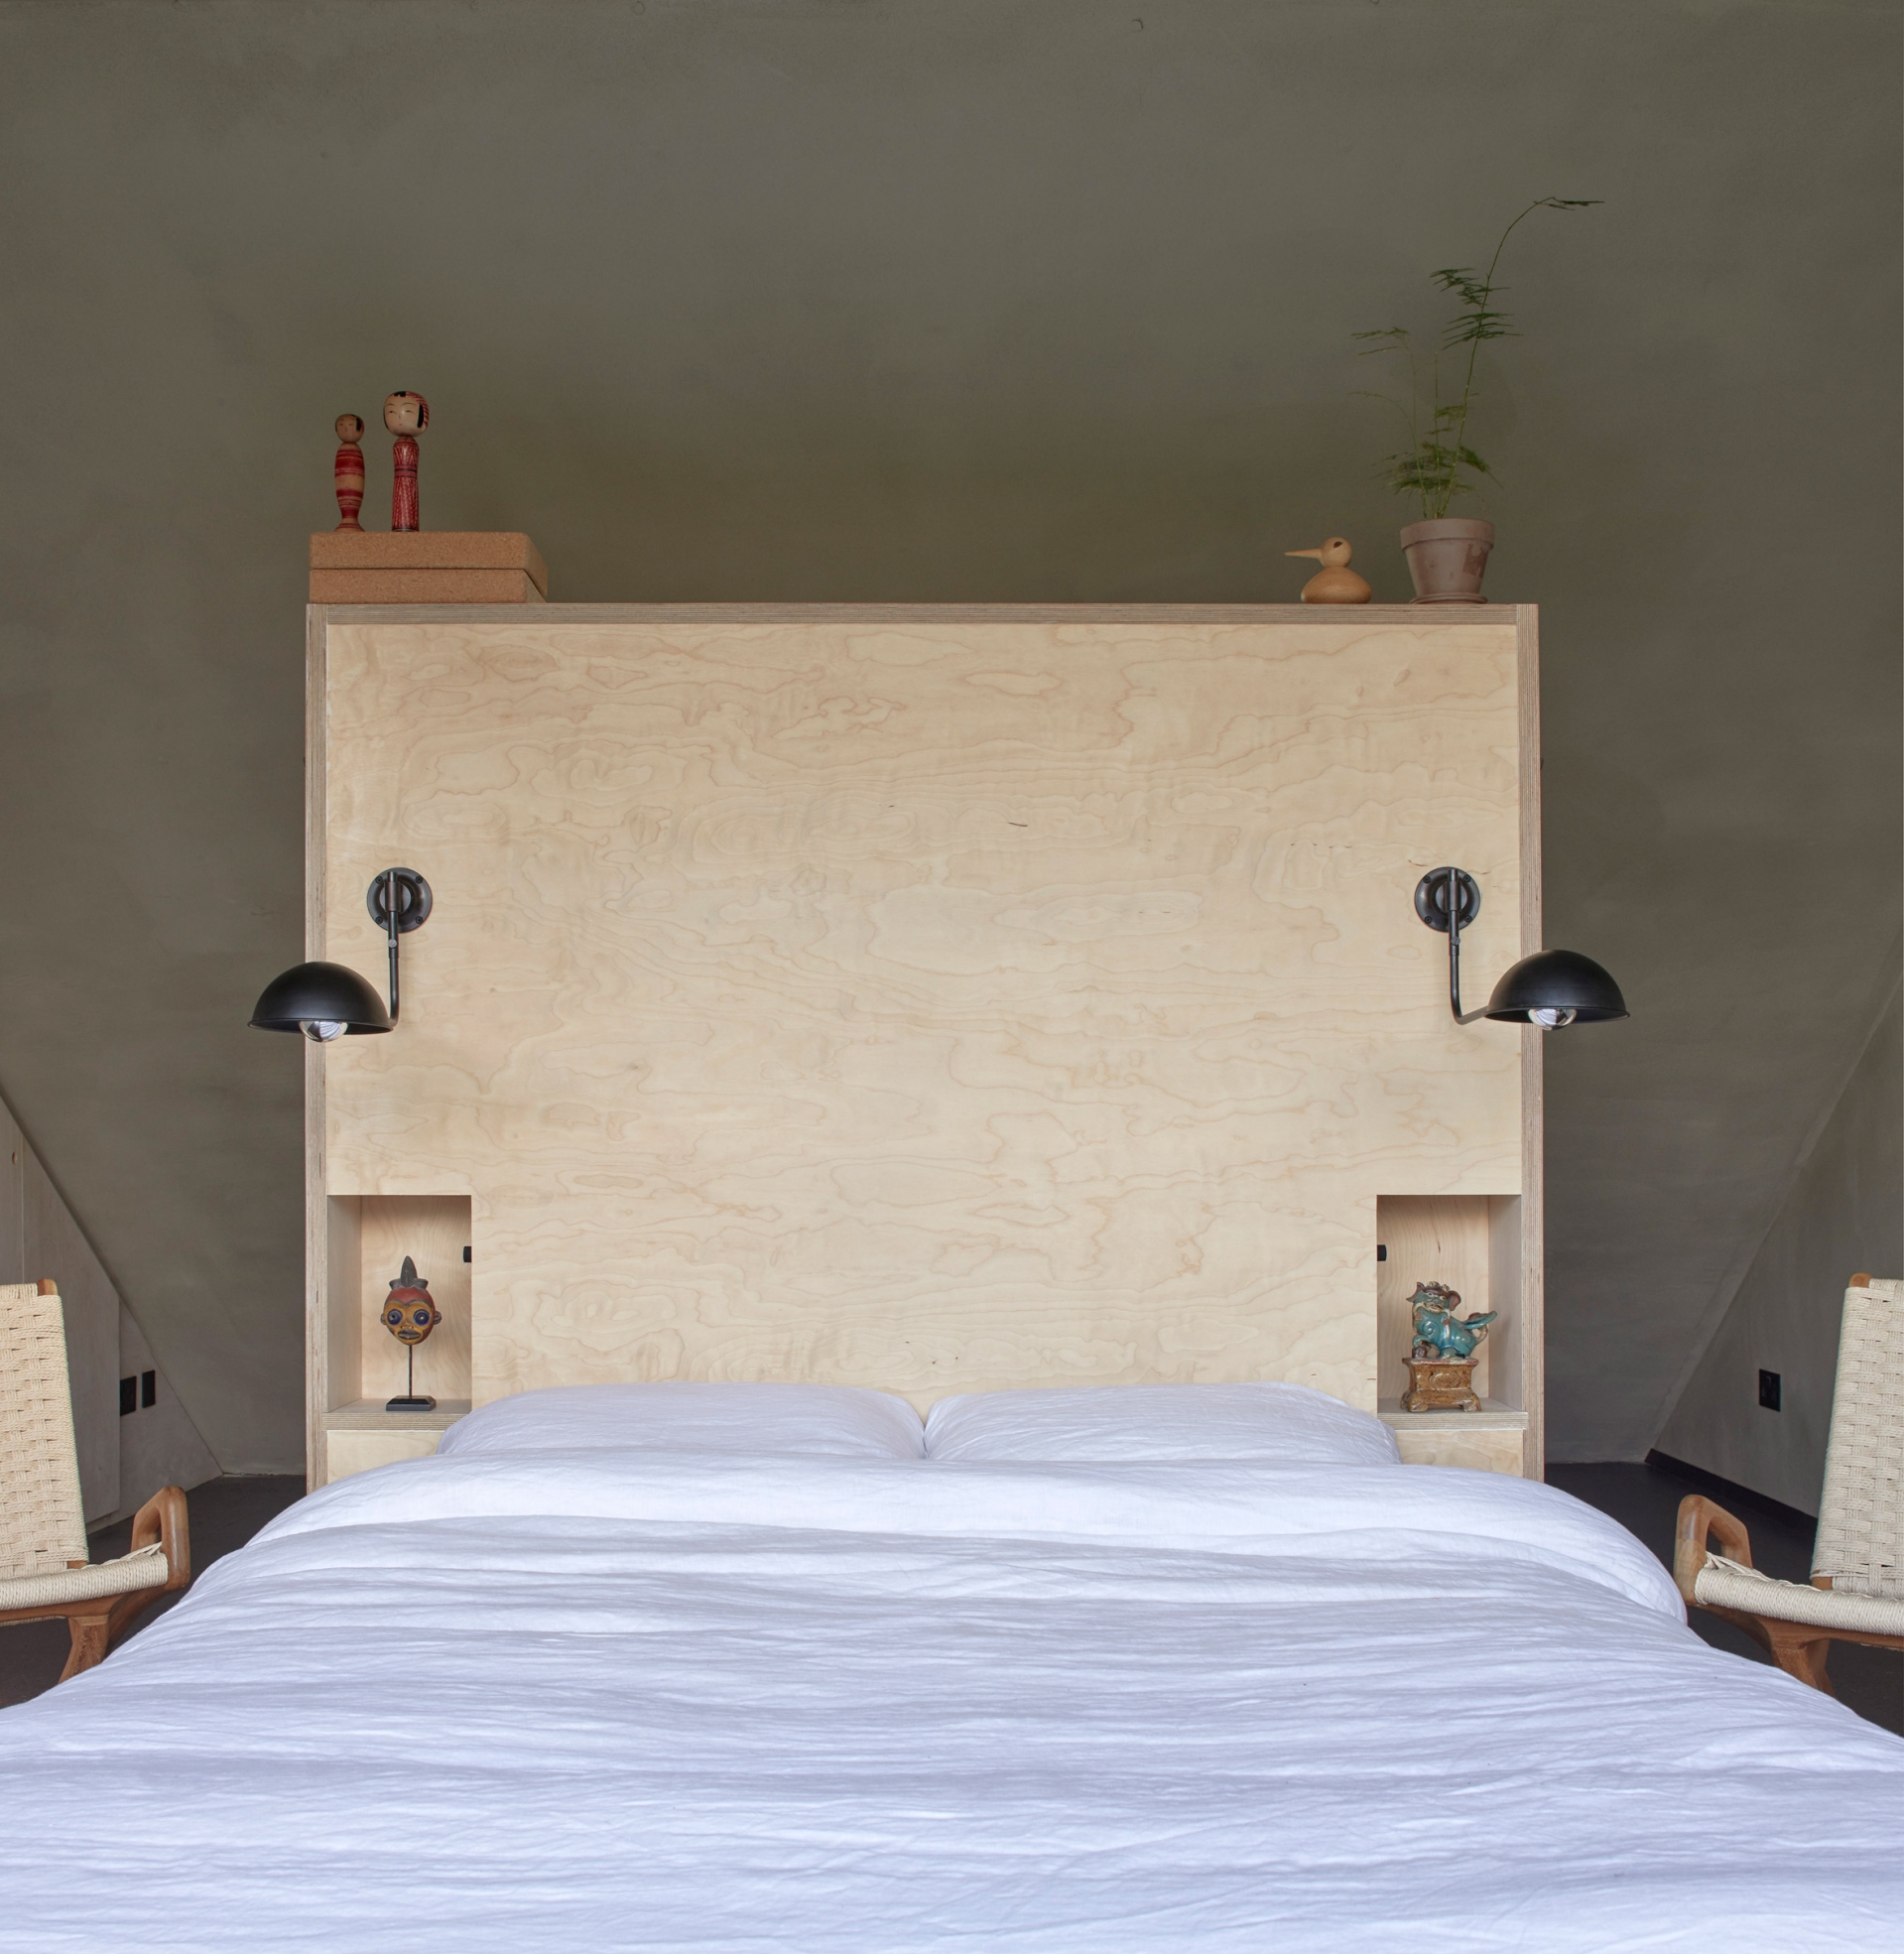 Phần đầu giường được bố trí ở phần mái dốc, có thiết kế đơn giản bằng gỗ sáng màu, đệm và chăn ga gối đồng nhất một màu trắng nhẹ nhàng, sạch sẽ.